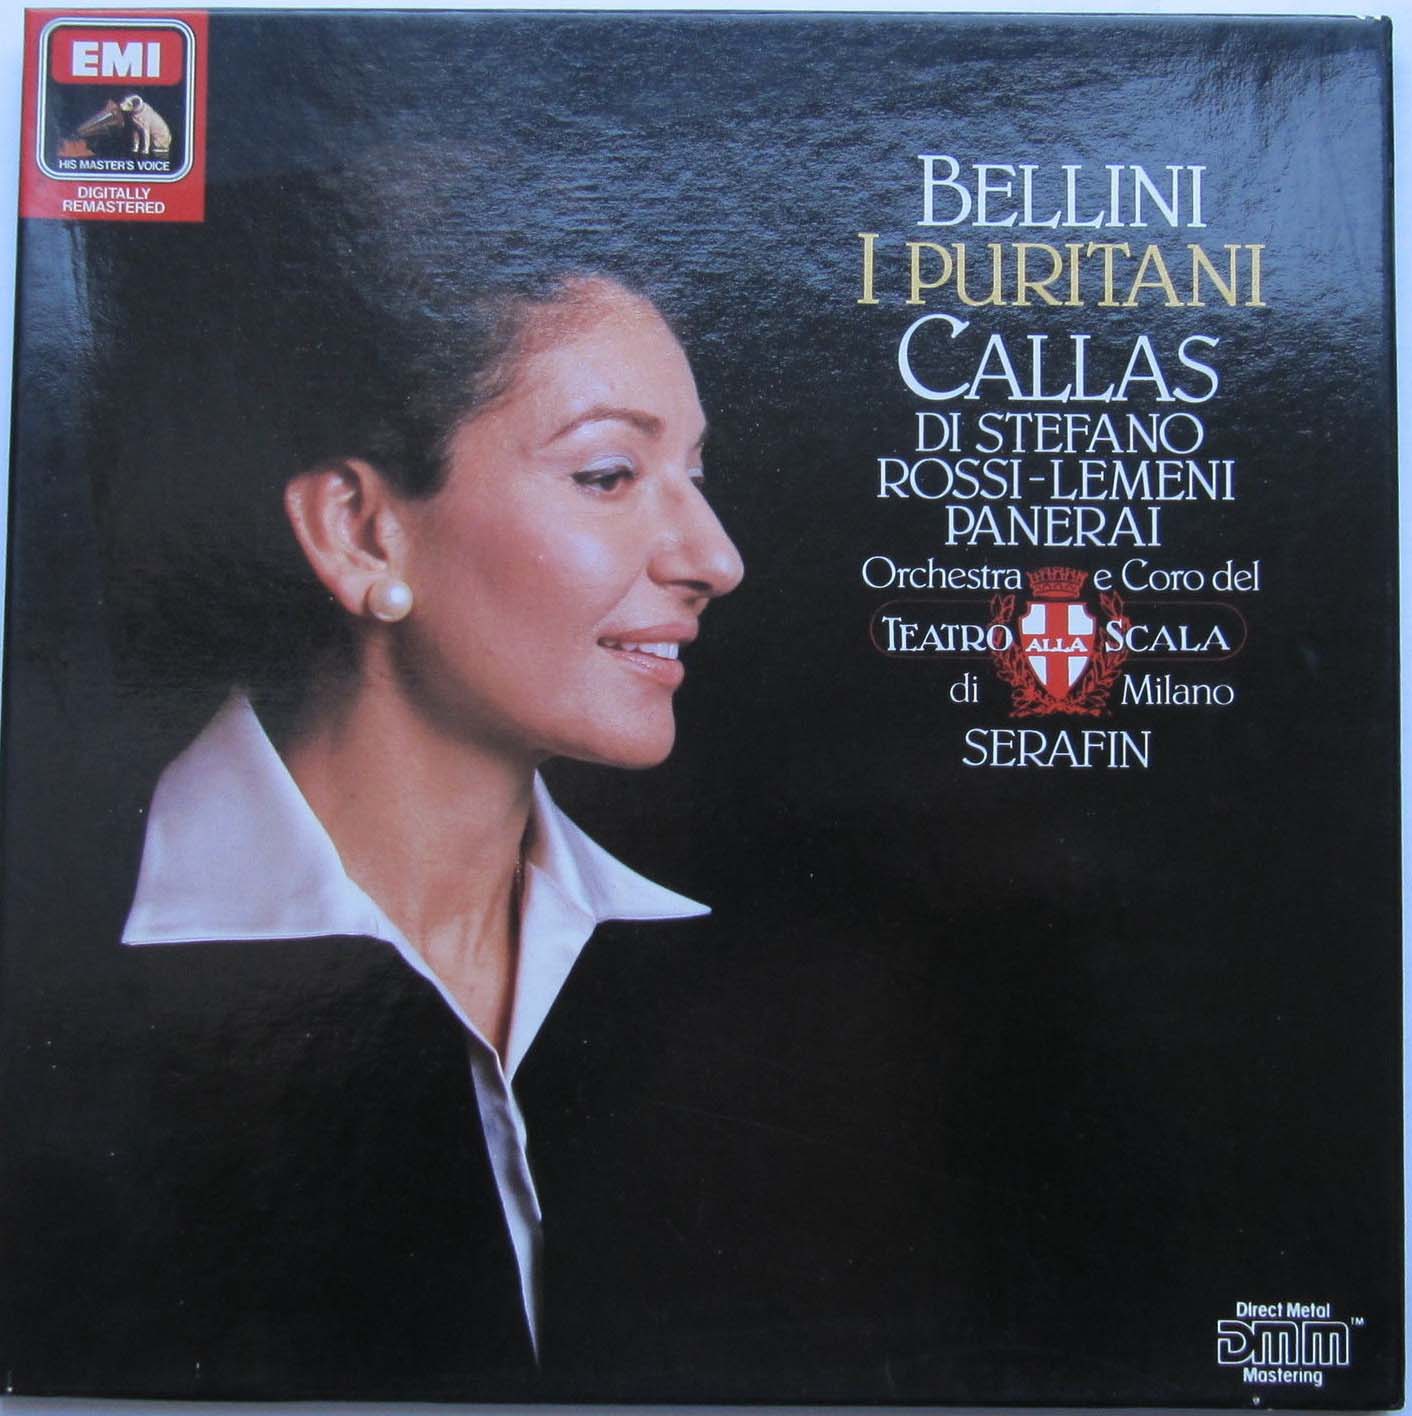 Bellini Callas  Di Stefano  RossiLemeni -  Puritani